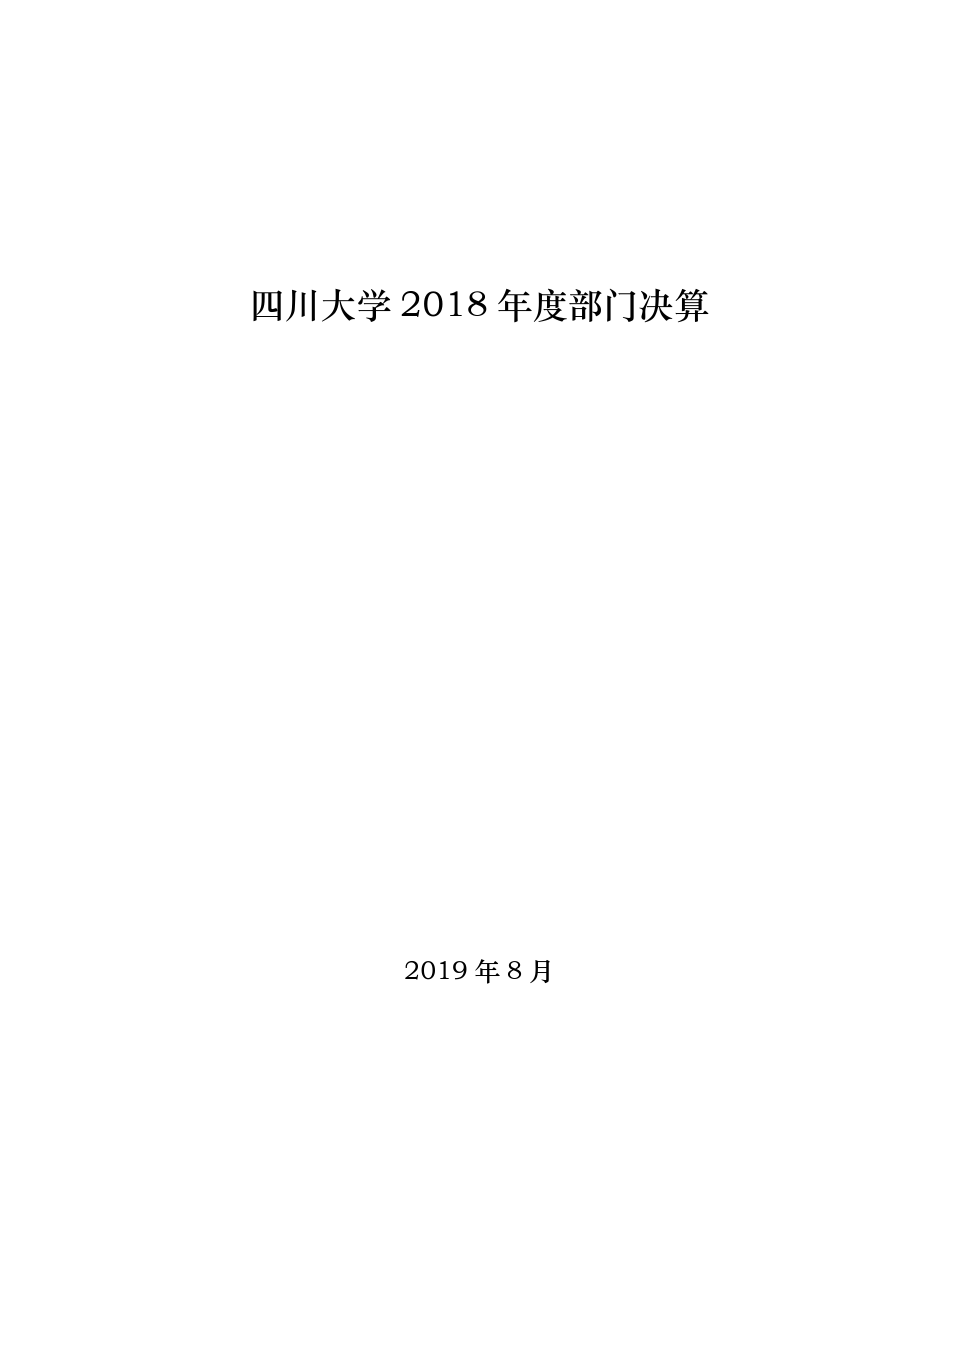 四川大学2018年决算公开文字说明